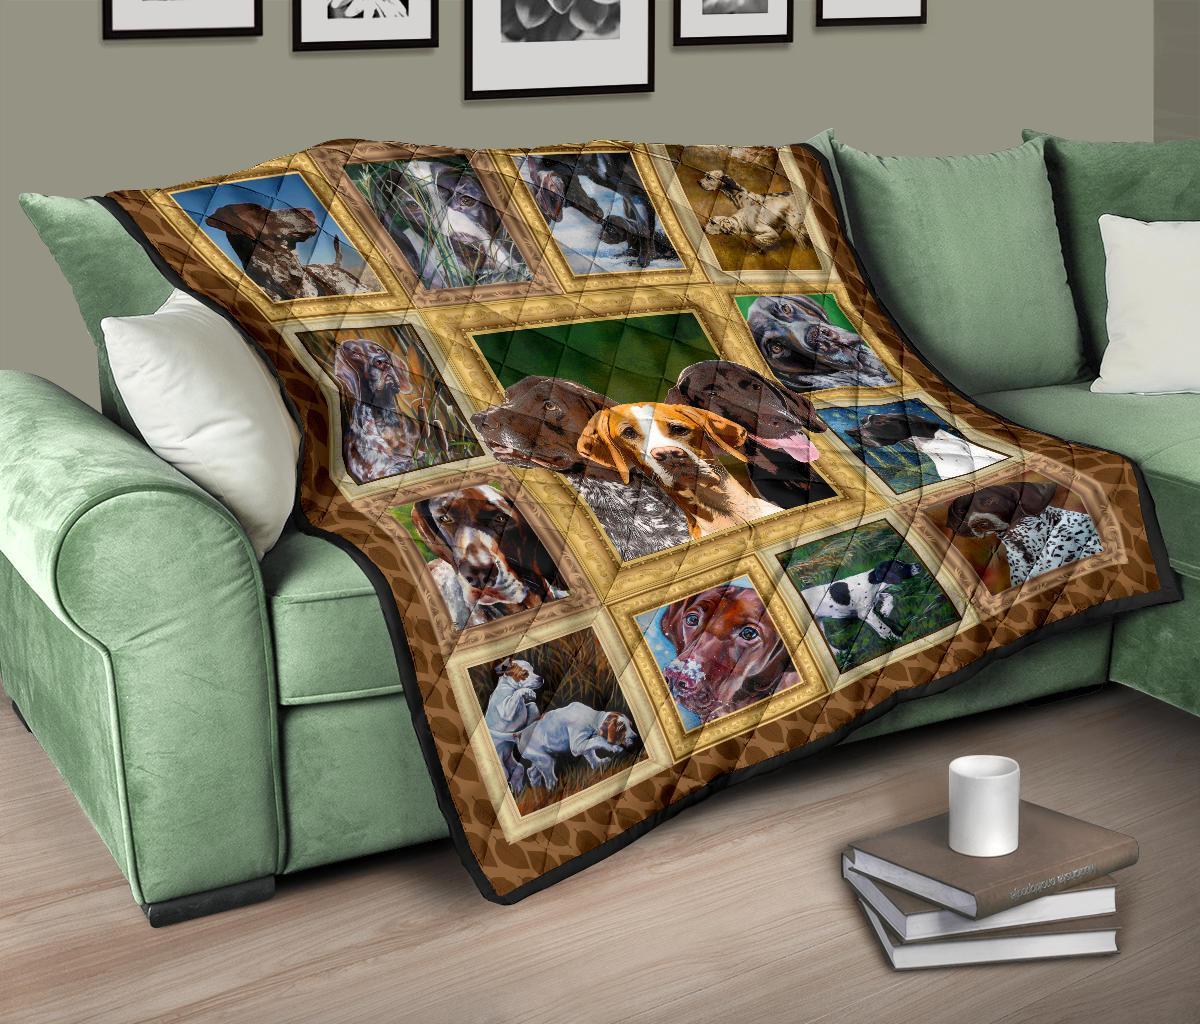 Pointer Dog Quilt Blanket Amazing-Gear Wanta